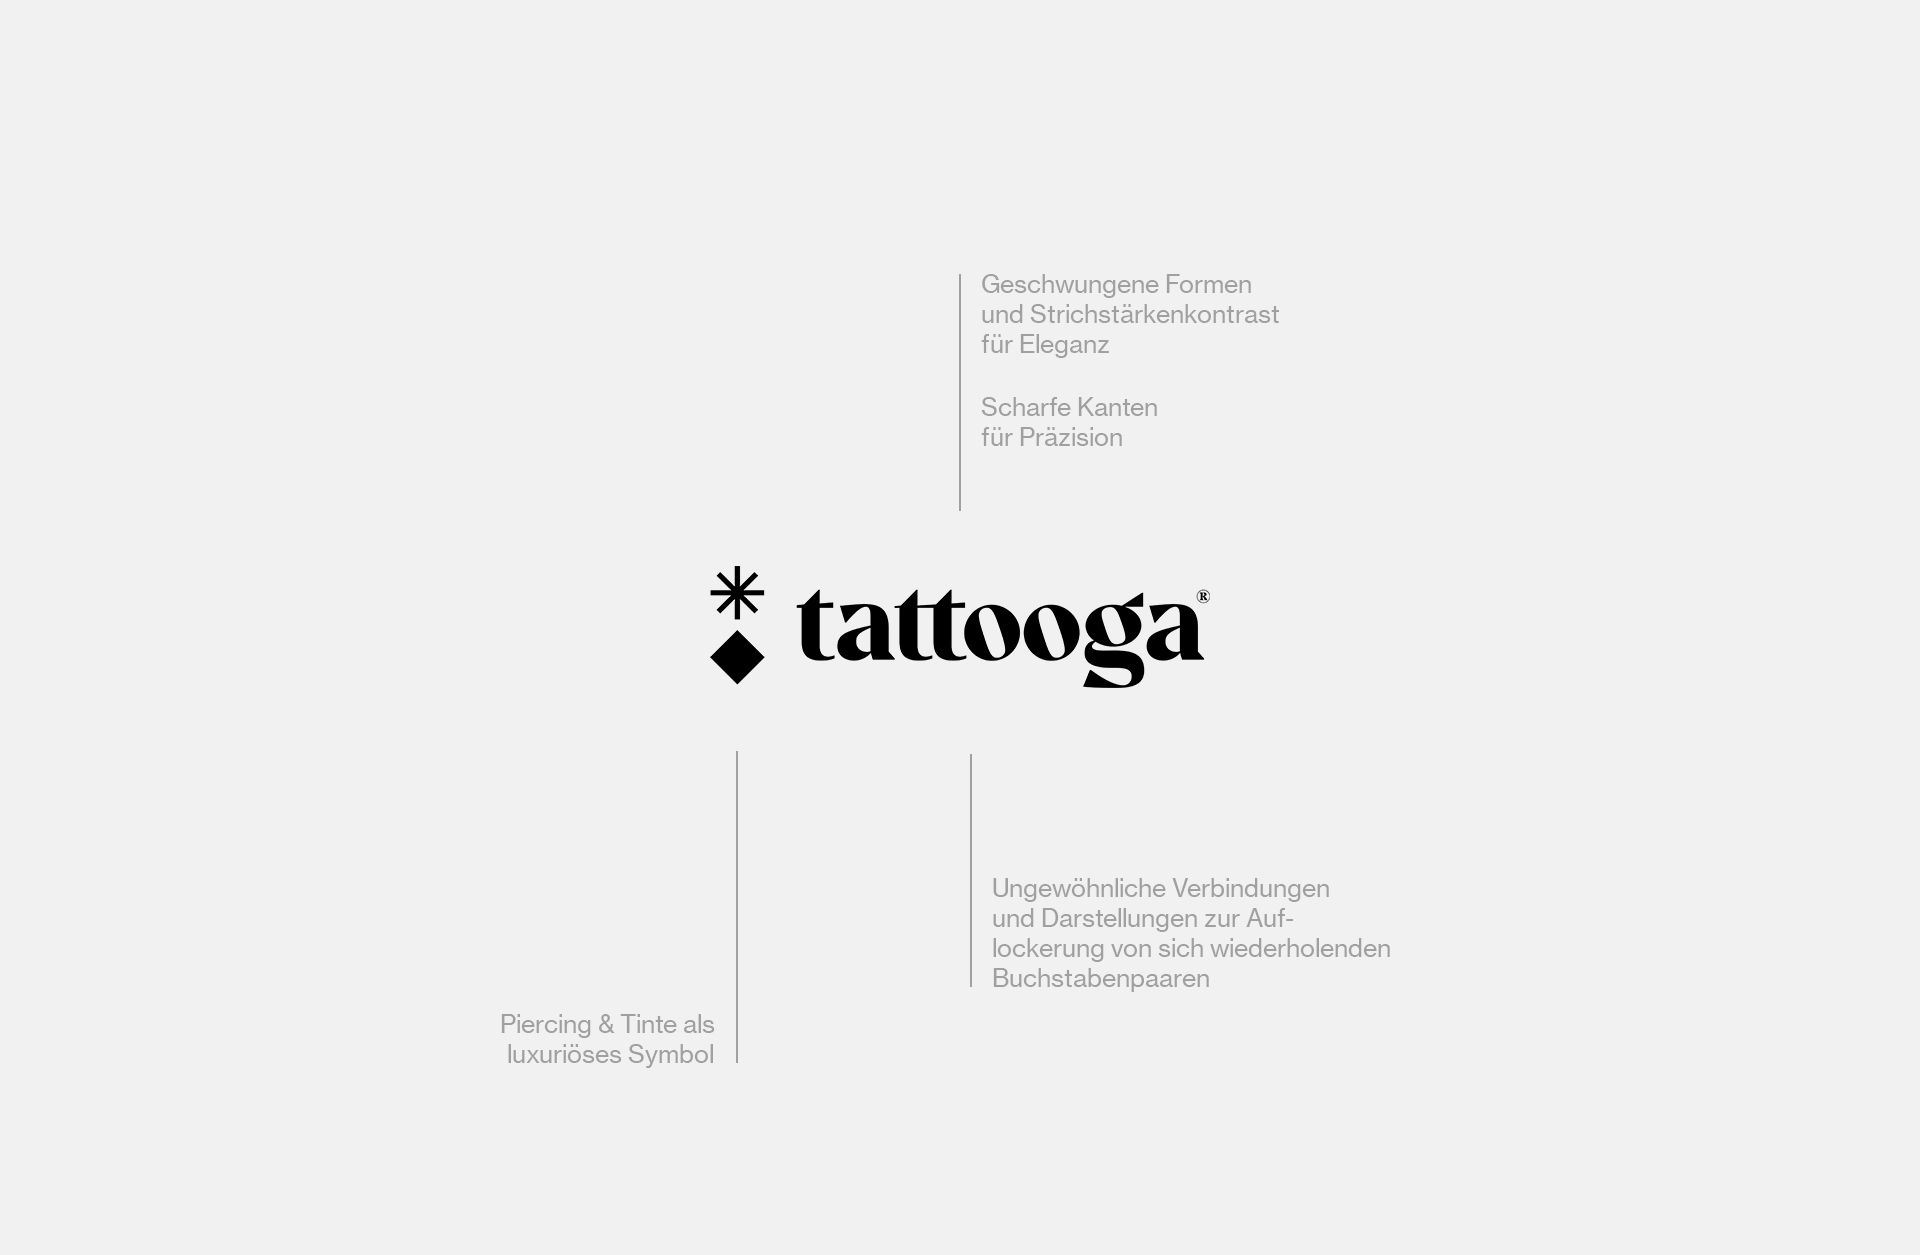 About-Emotions_Designagentur-Recklinghausen_Case_Tattooga_Logo-Breakdown.jpg